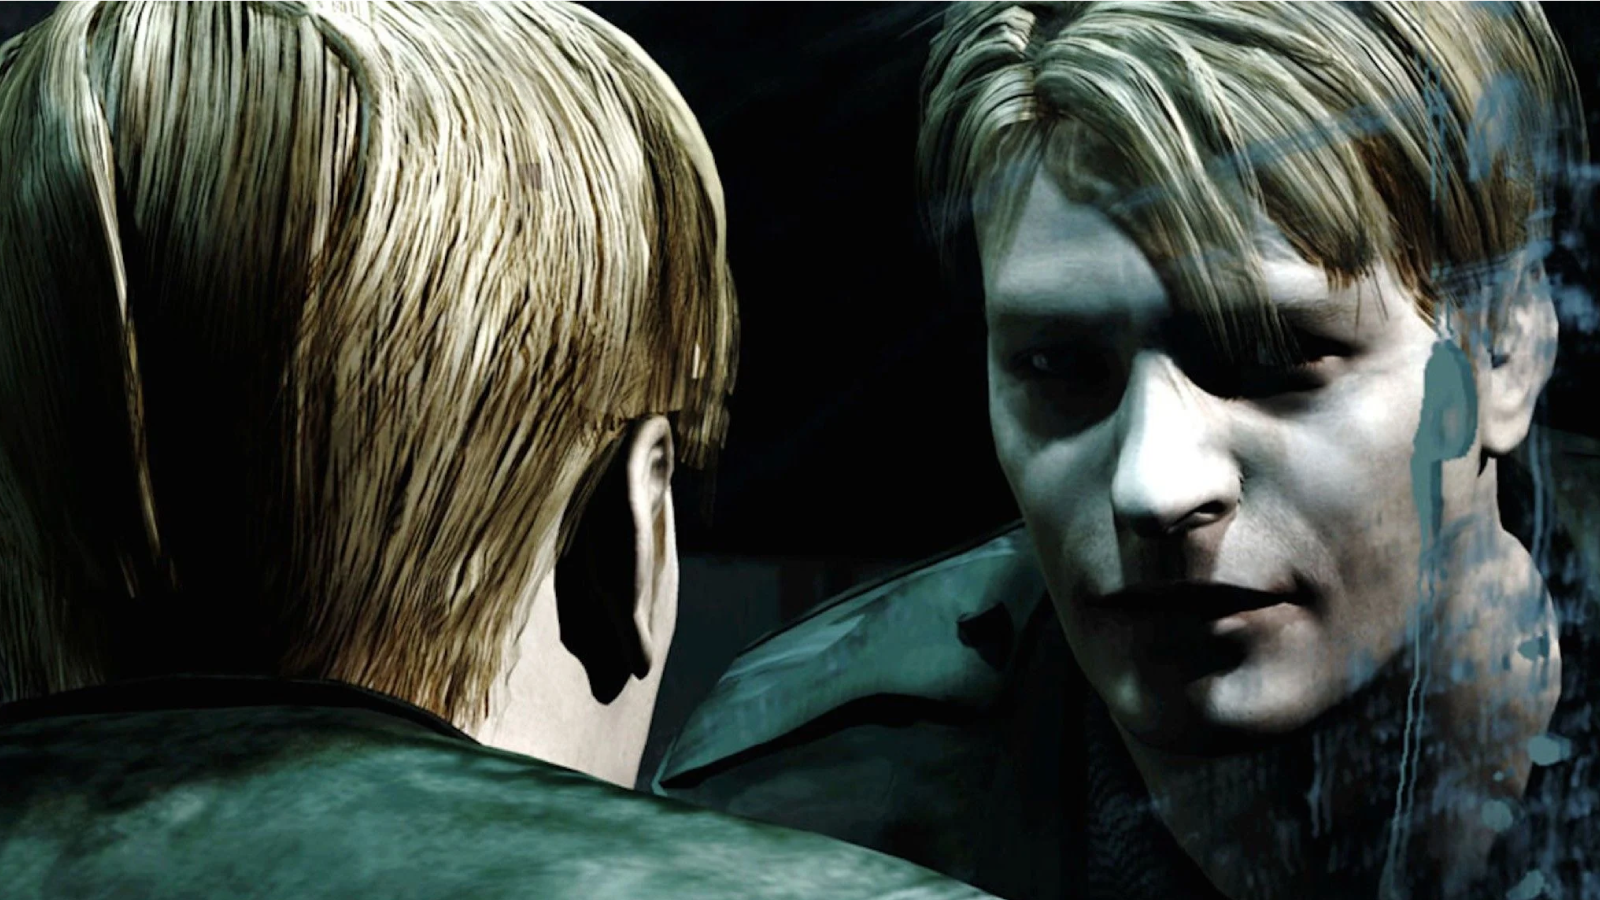 Image for Silent Hill 2 Remake screenshots allegedly leak online